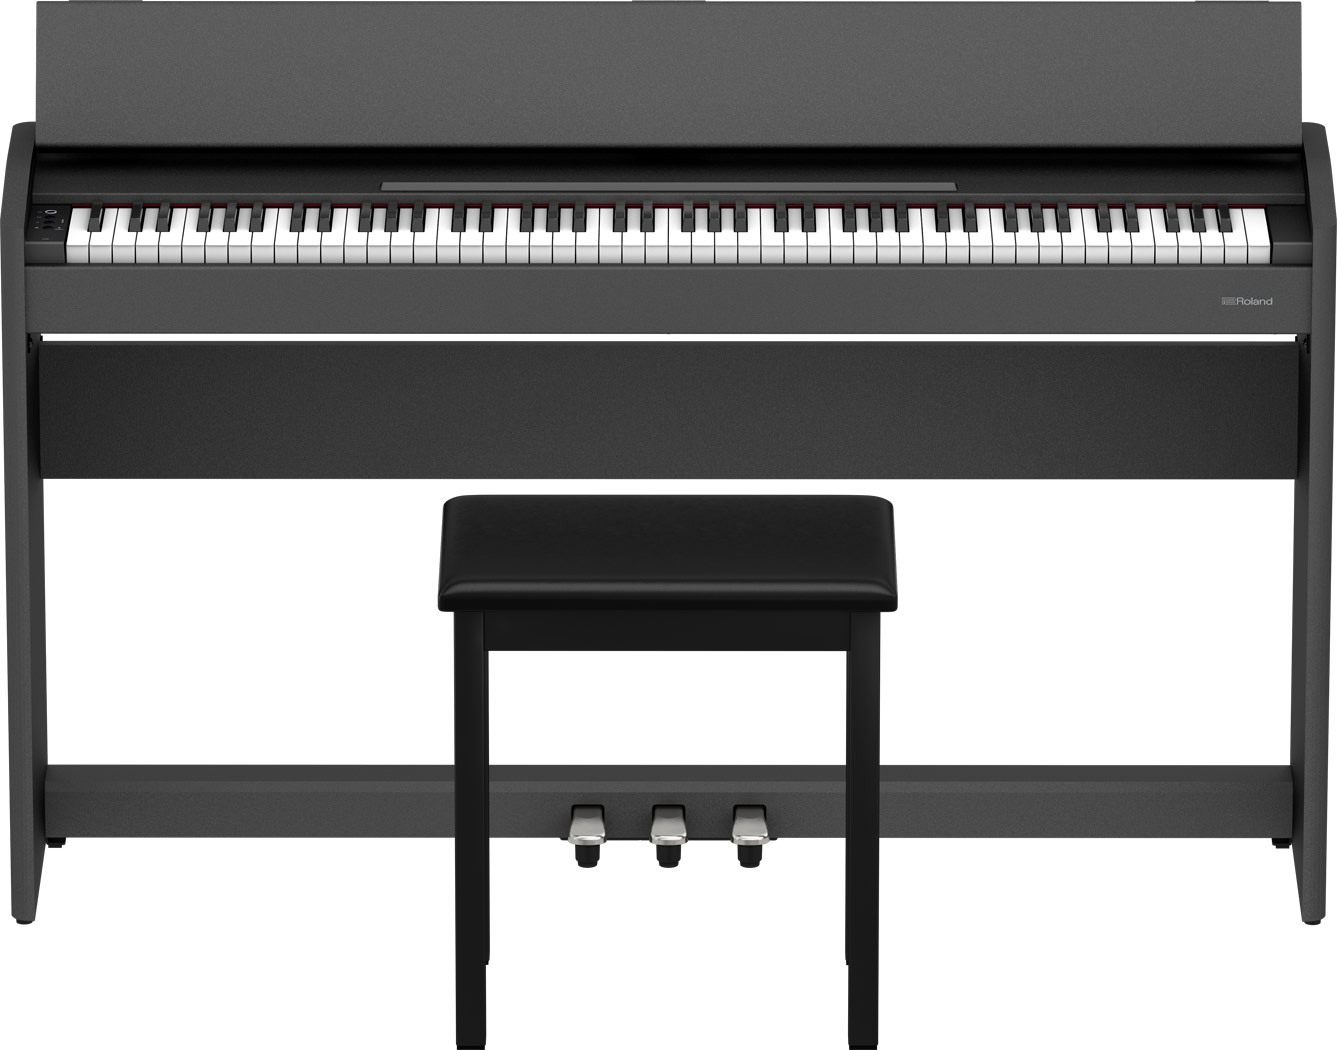 【非凡樂器】Roland F107 數位鋼琴 黑色 / 公司貨保固 / 歡迎現場試琴